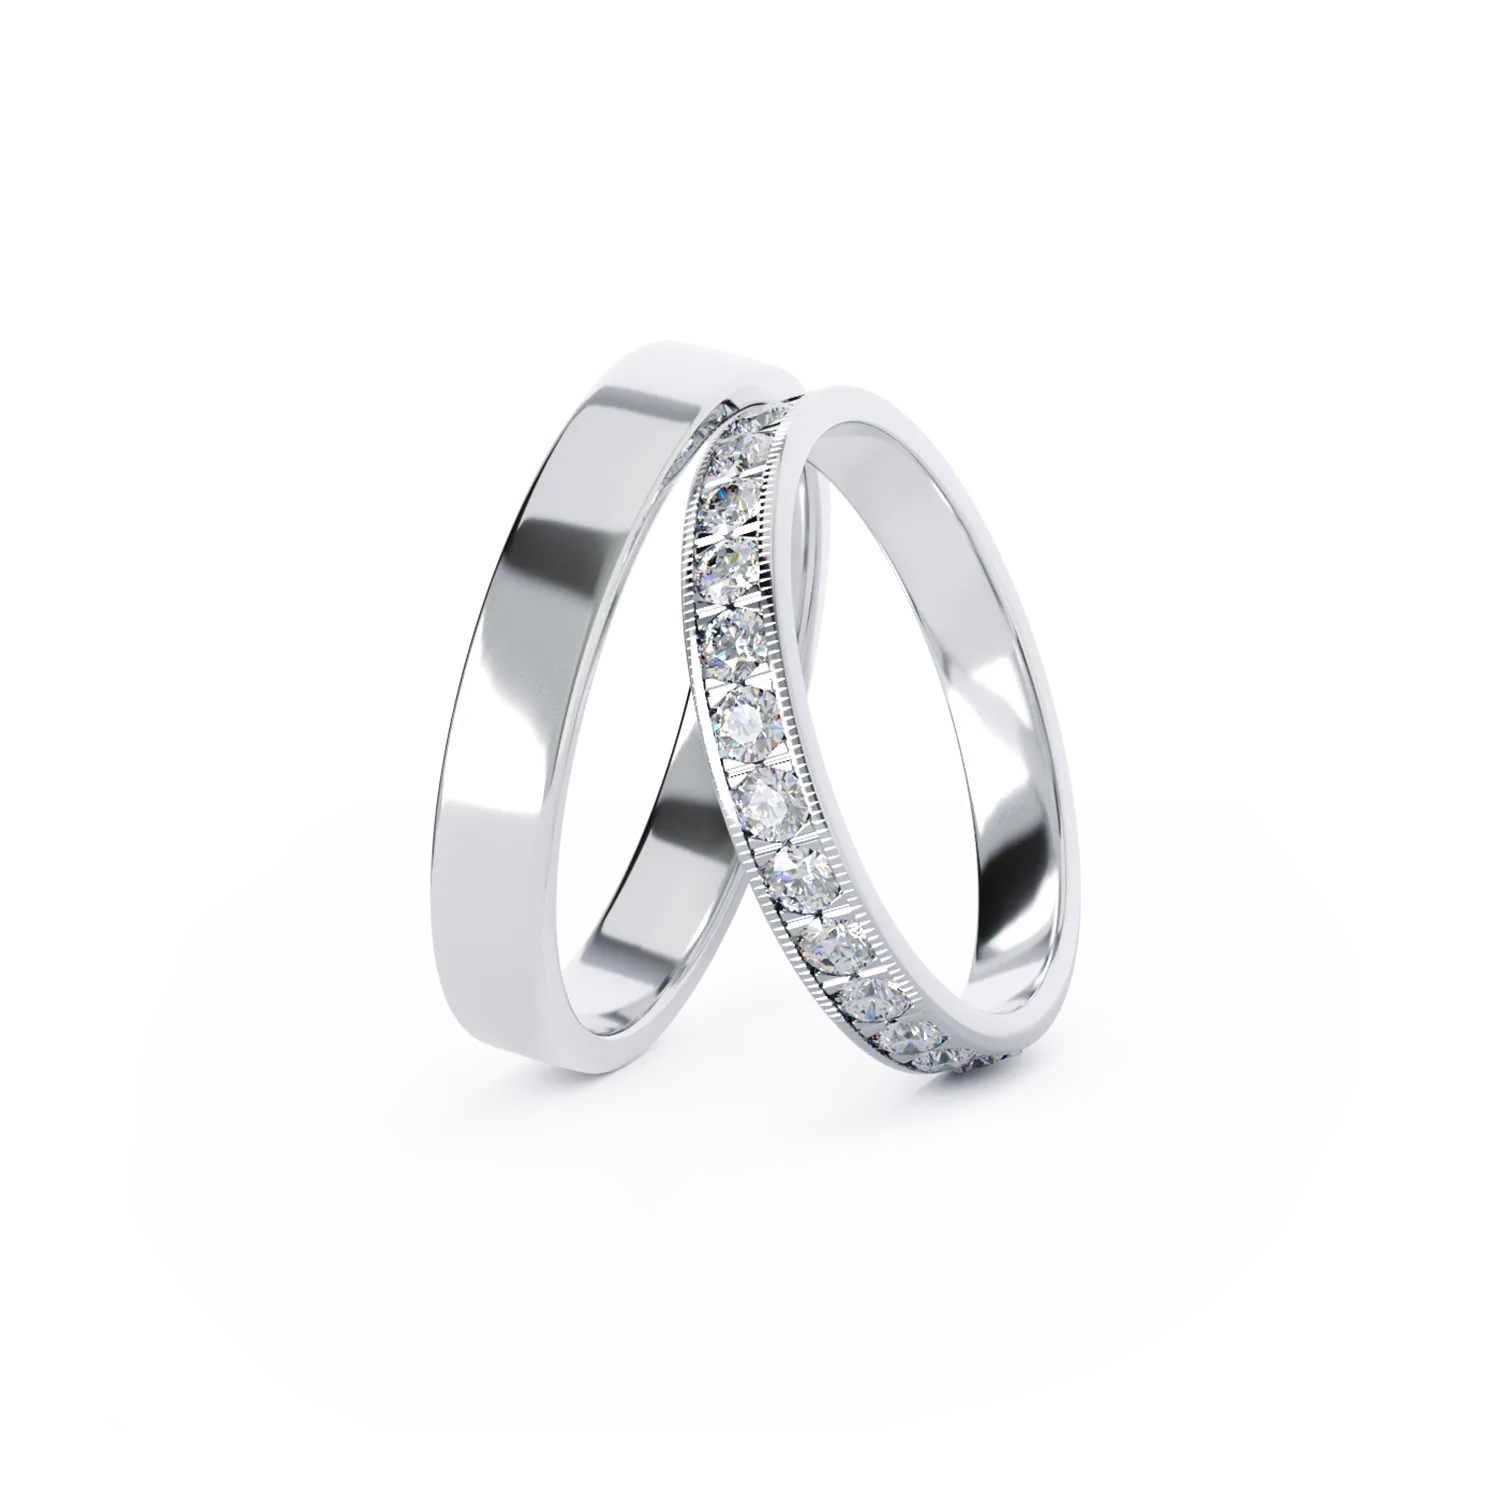 TEI-ABBY arany karikagyűrűk